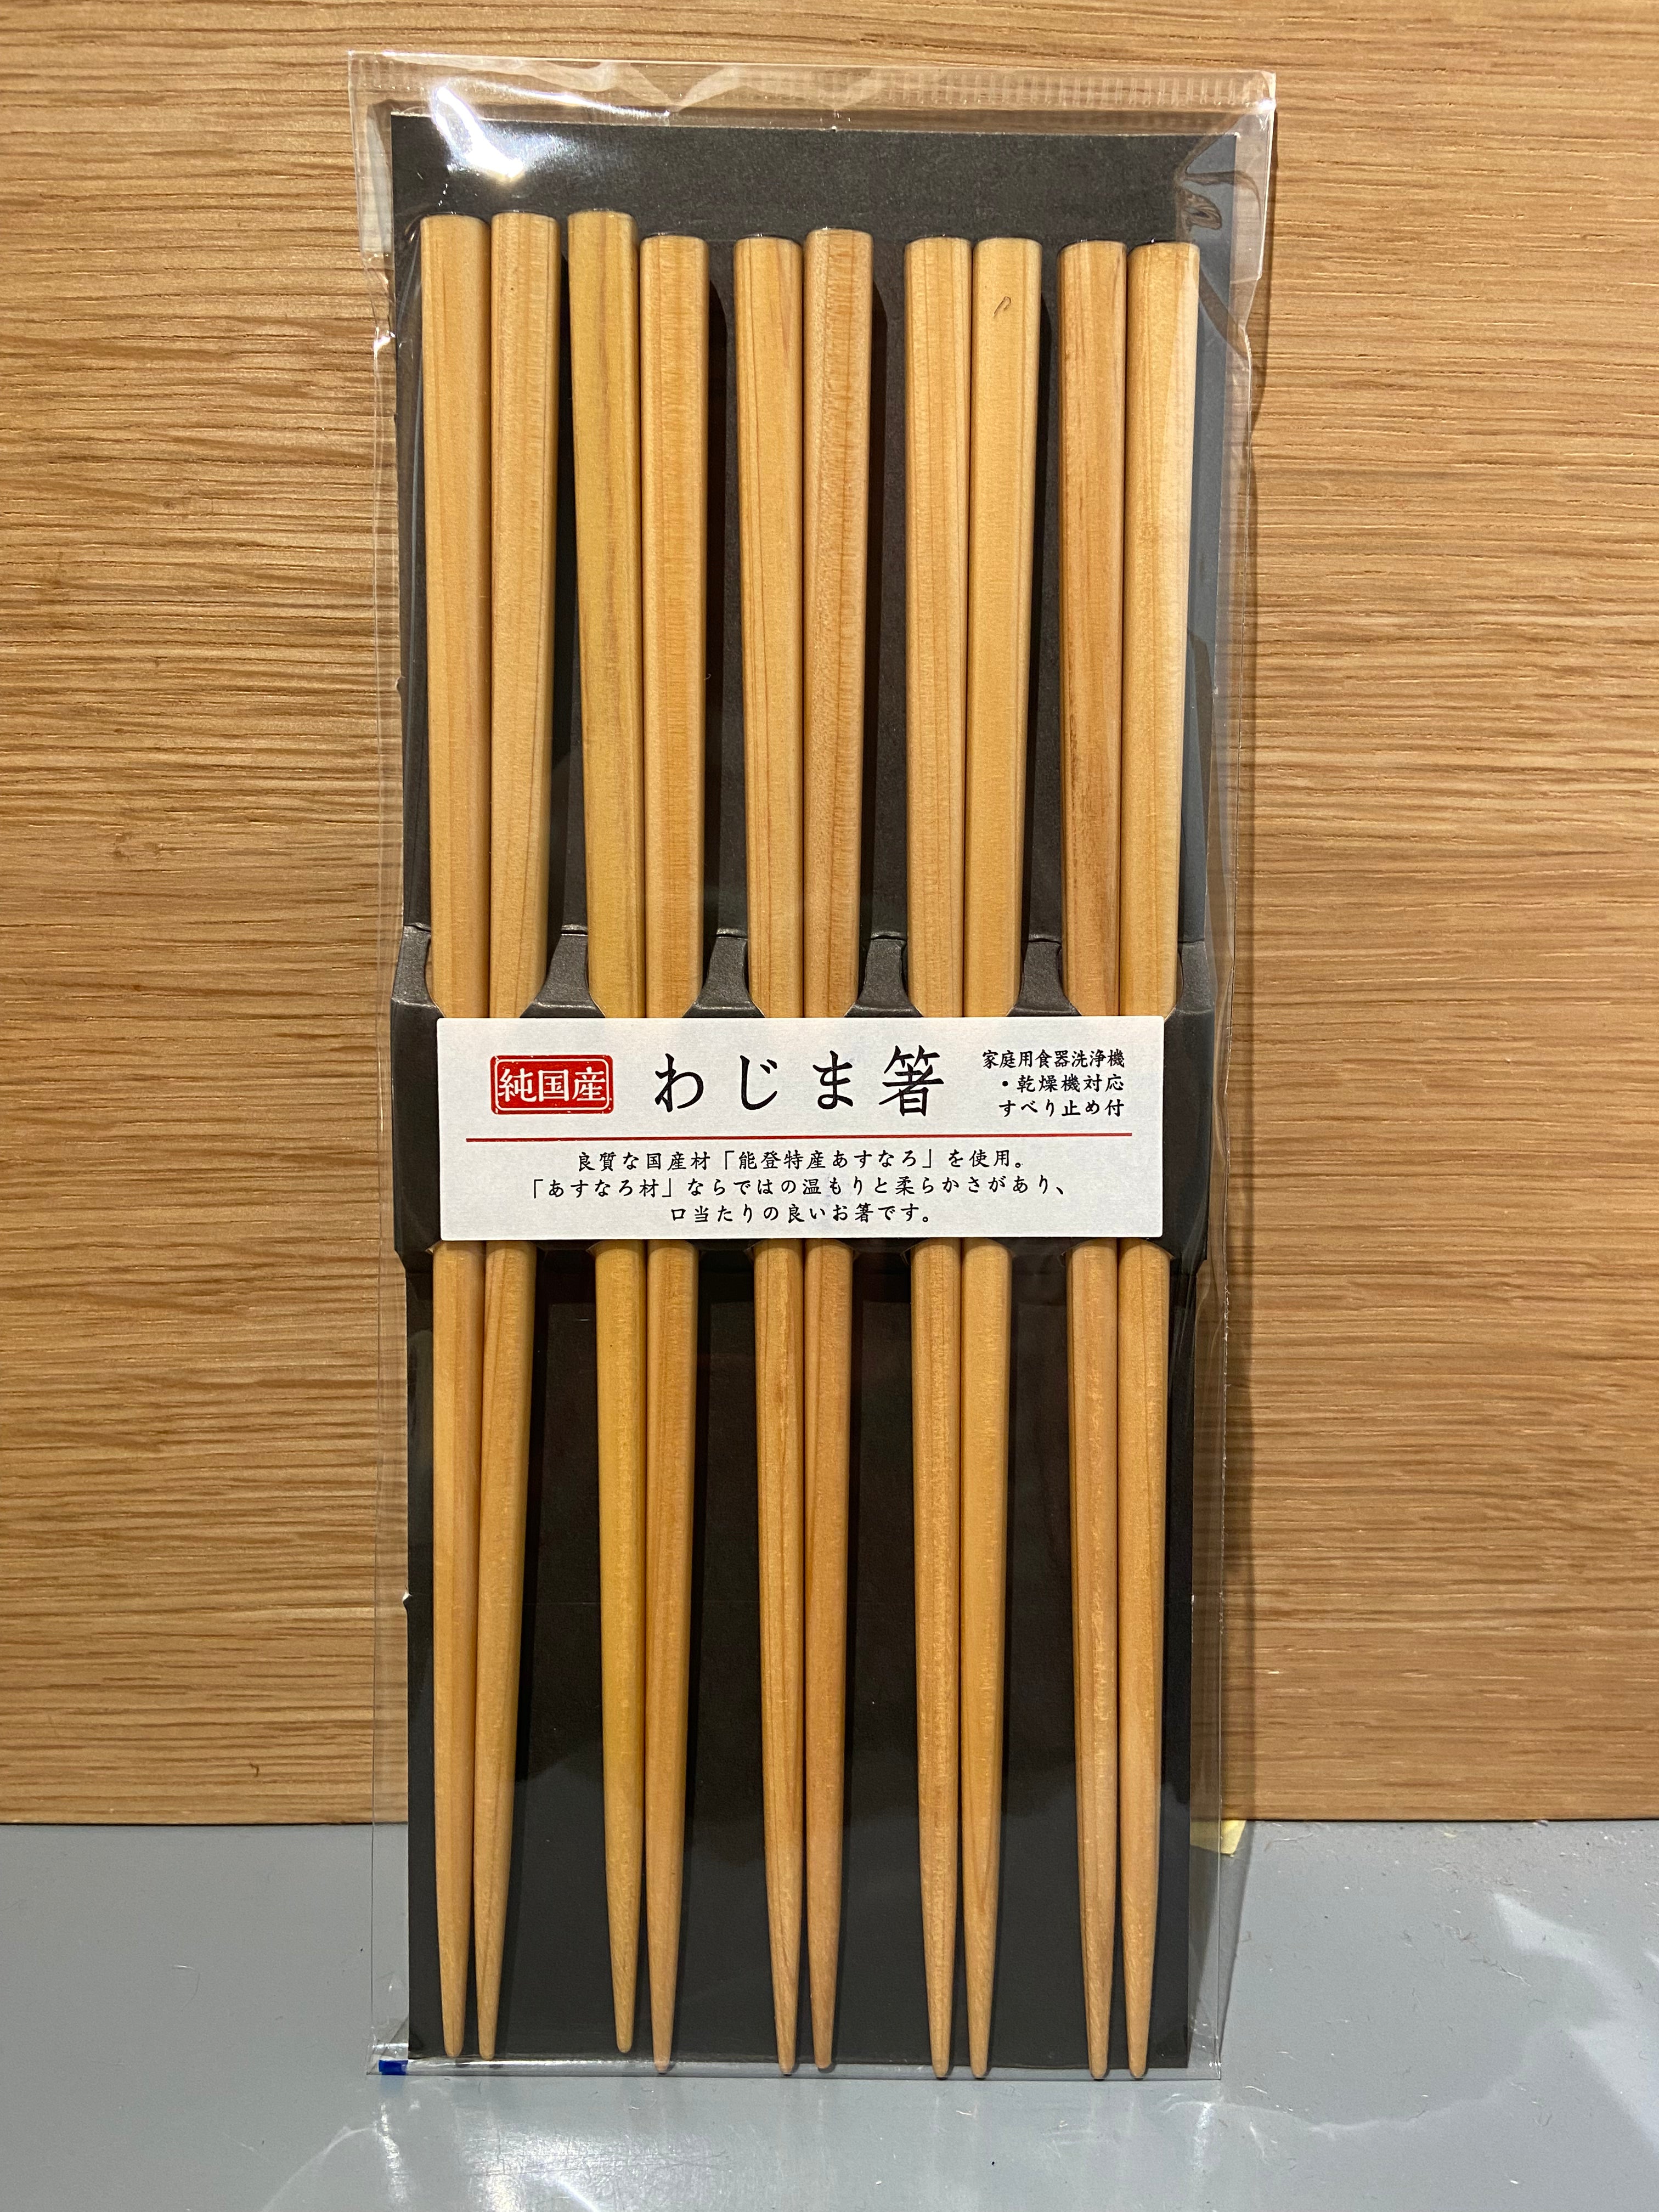 Chopsticks, natural wood